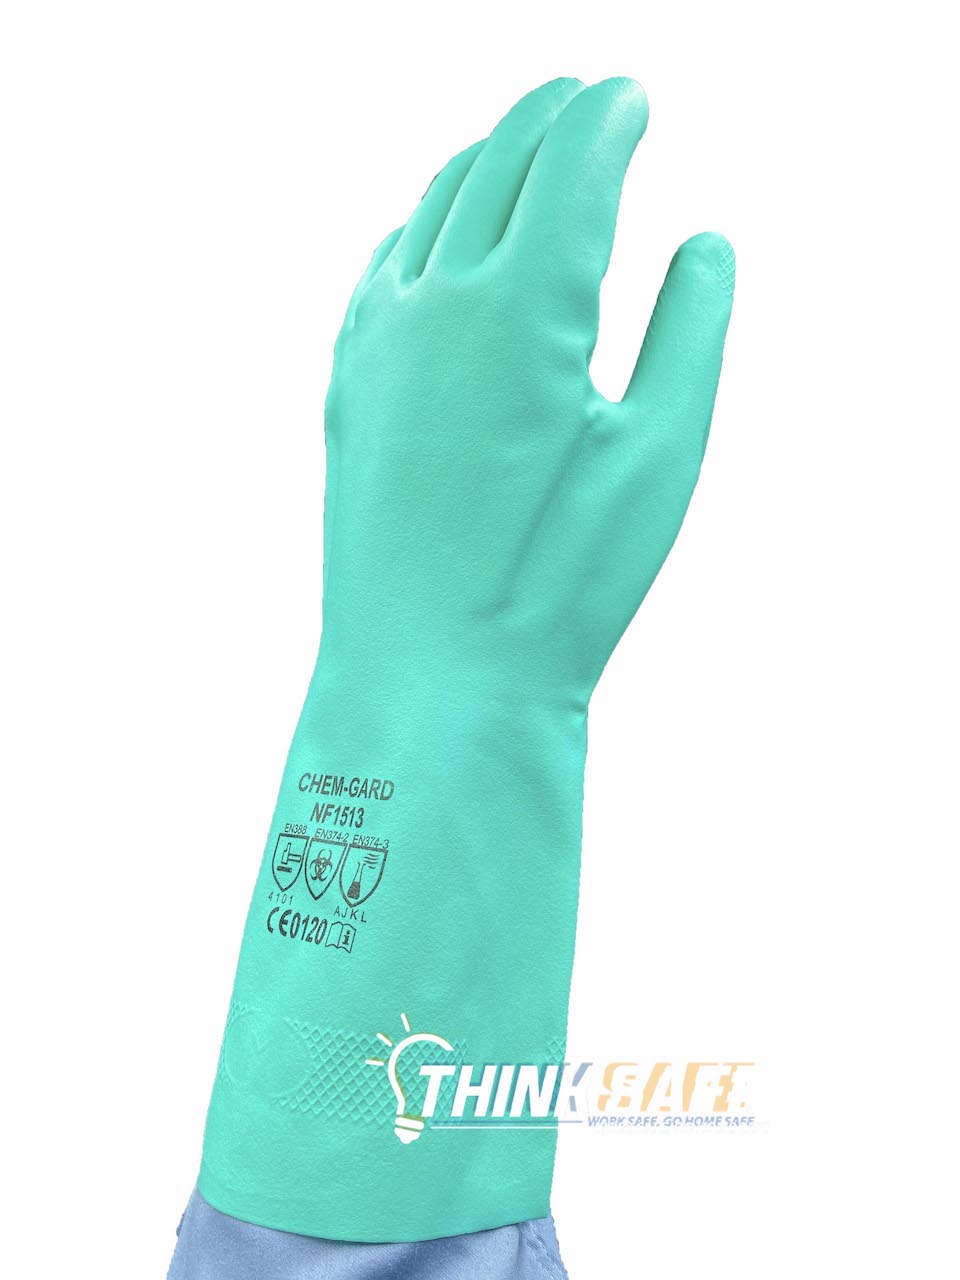 Găng tay chịu dầu Nastah NF1513 chống hóa chất, thoáng êm tay xuất xứ Malaysia (xanh)